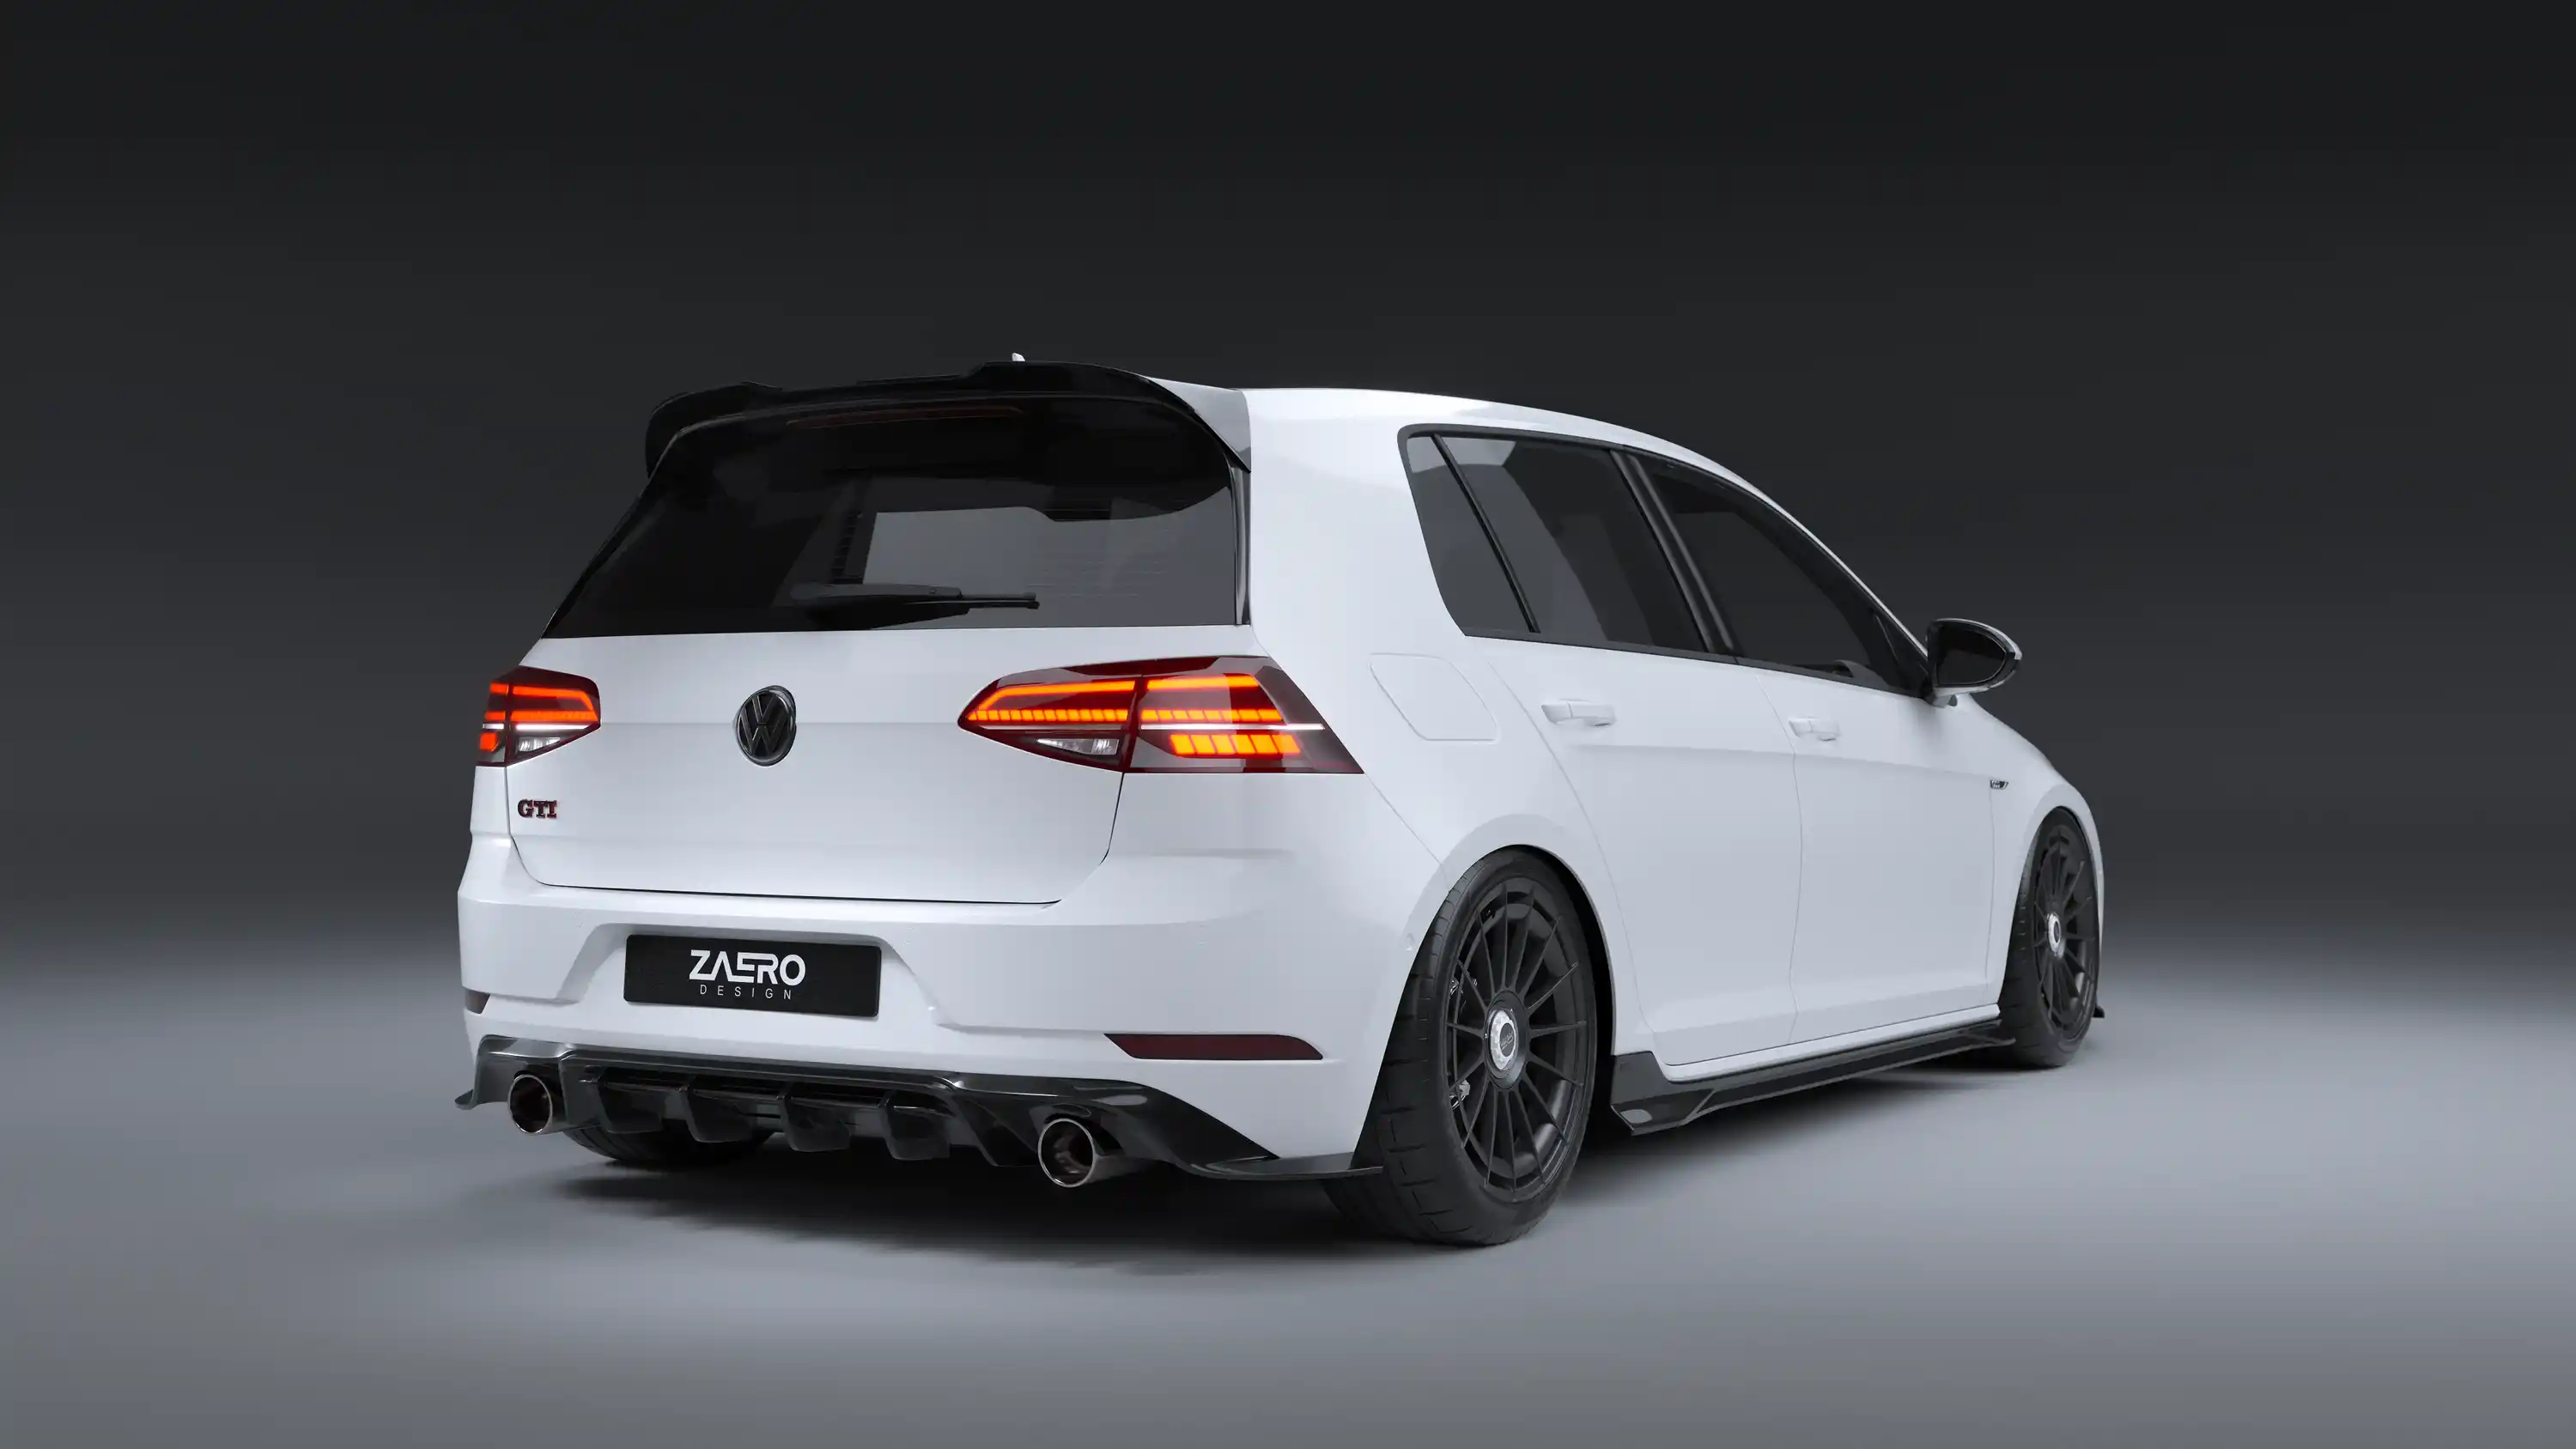 ZAERO DESIGN Diffuser for VW Golf 7.5 GTI (2013 – 2019)